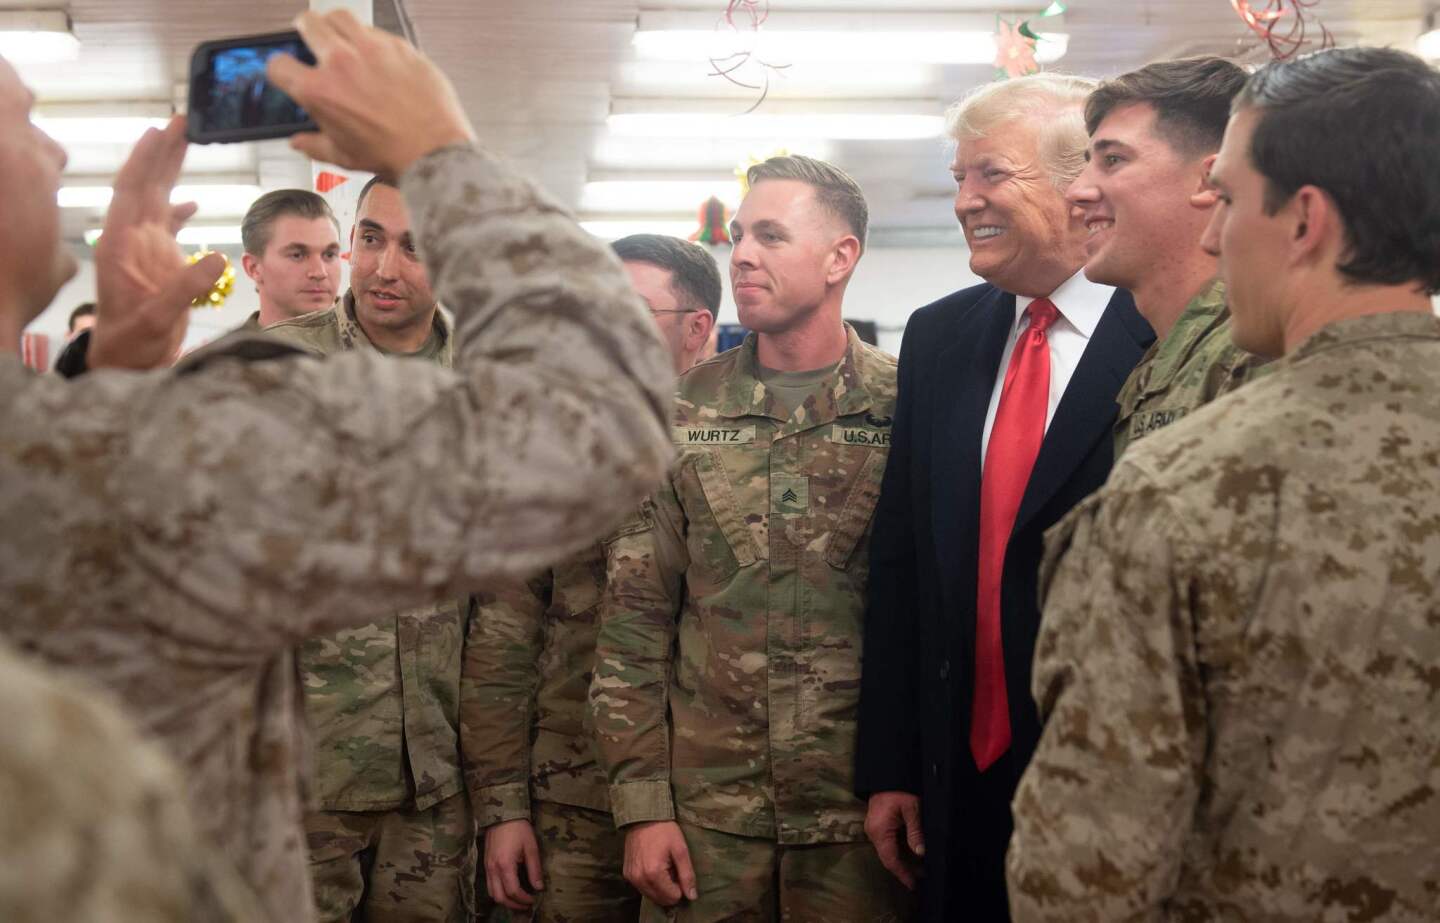 President Trump in Iraq